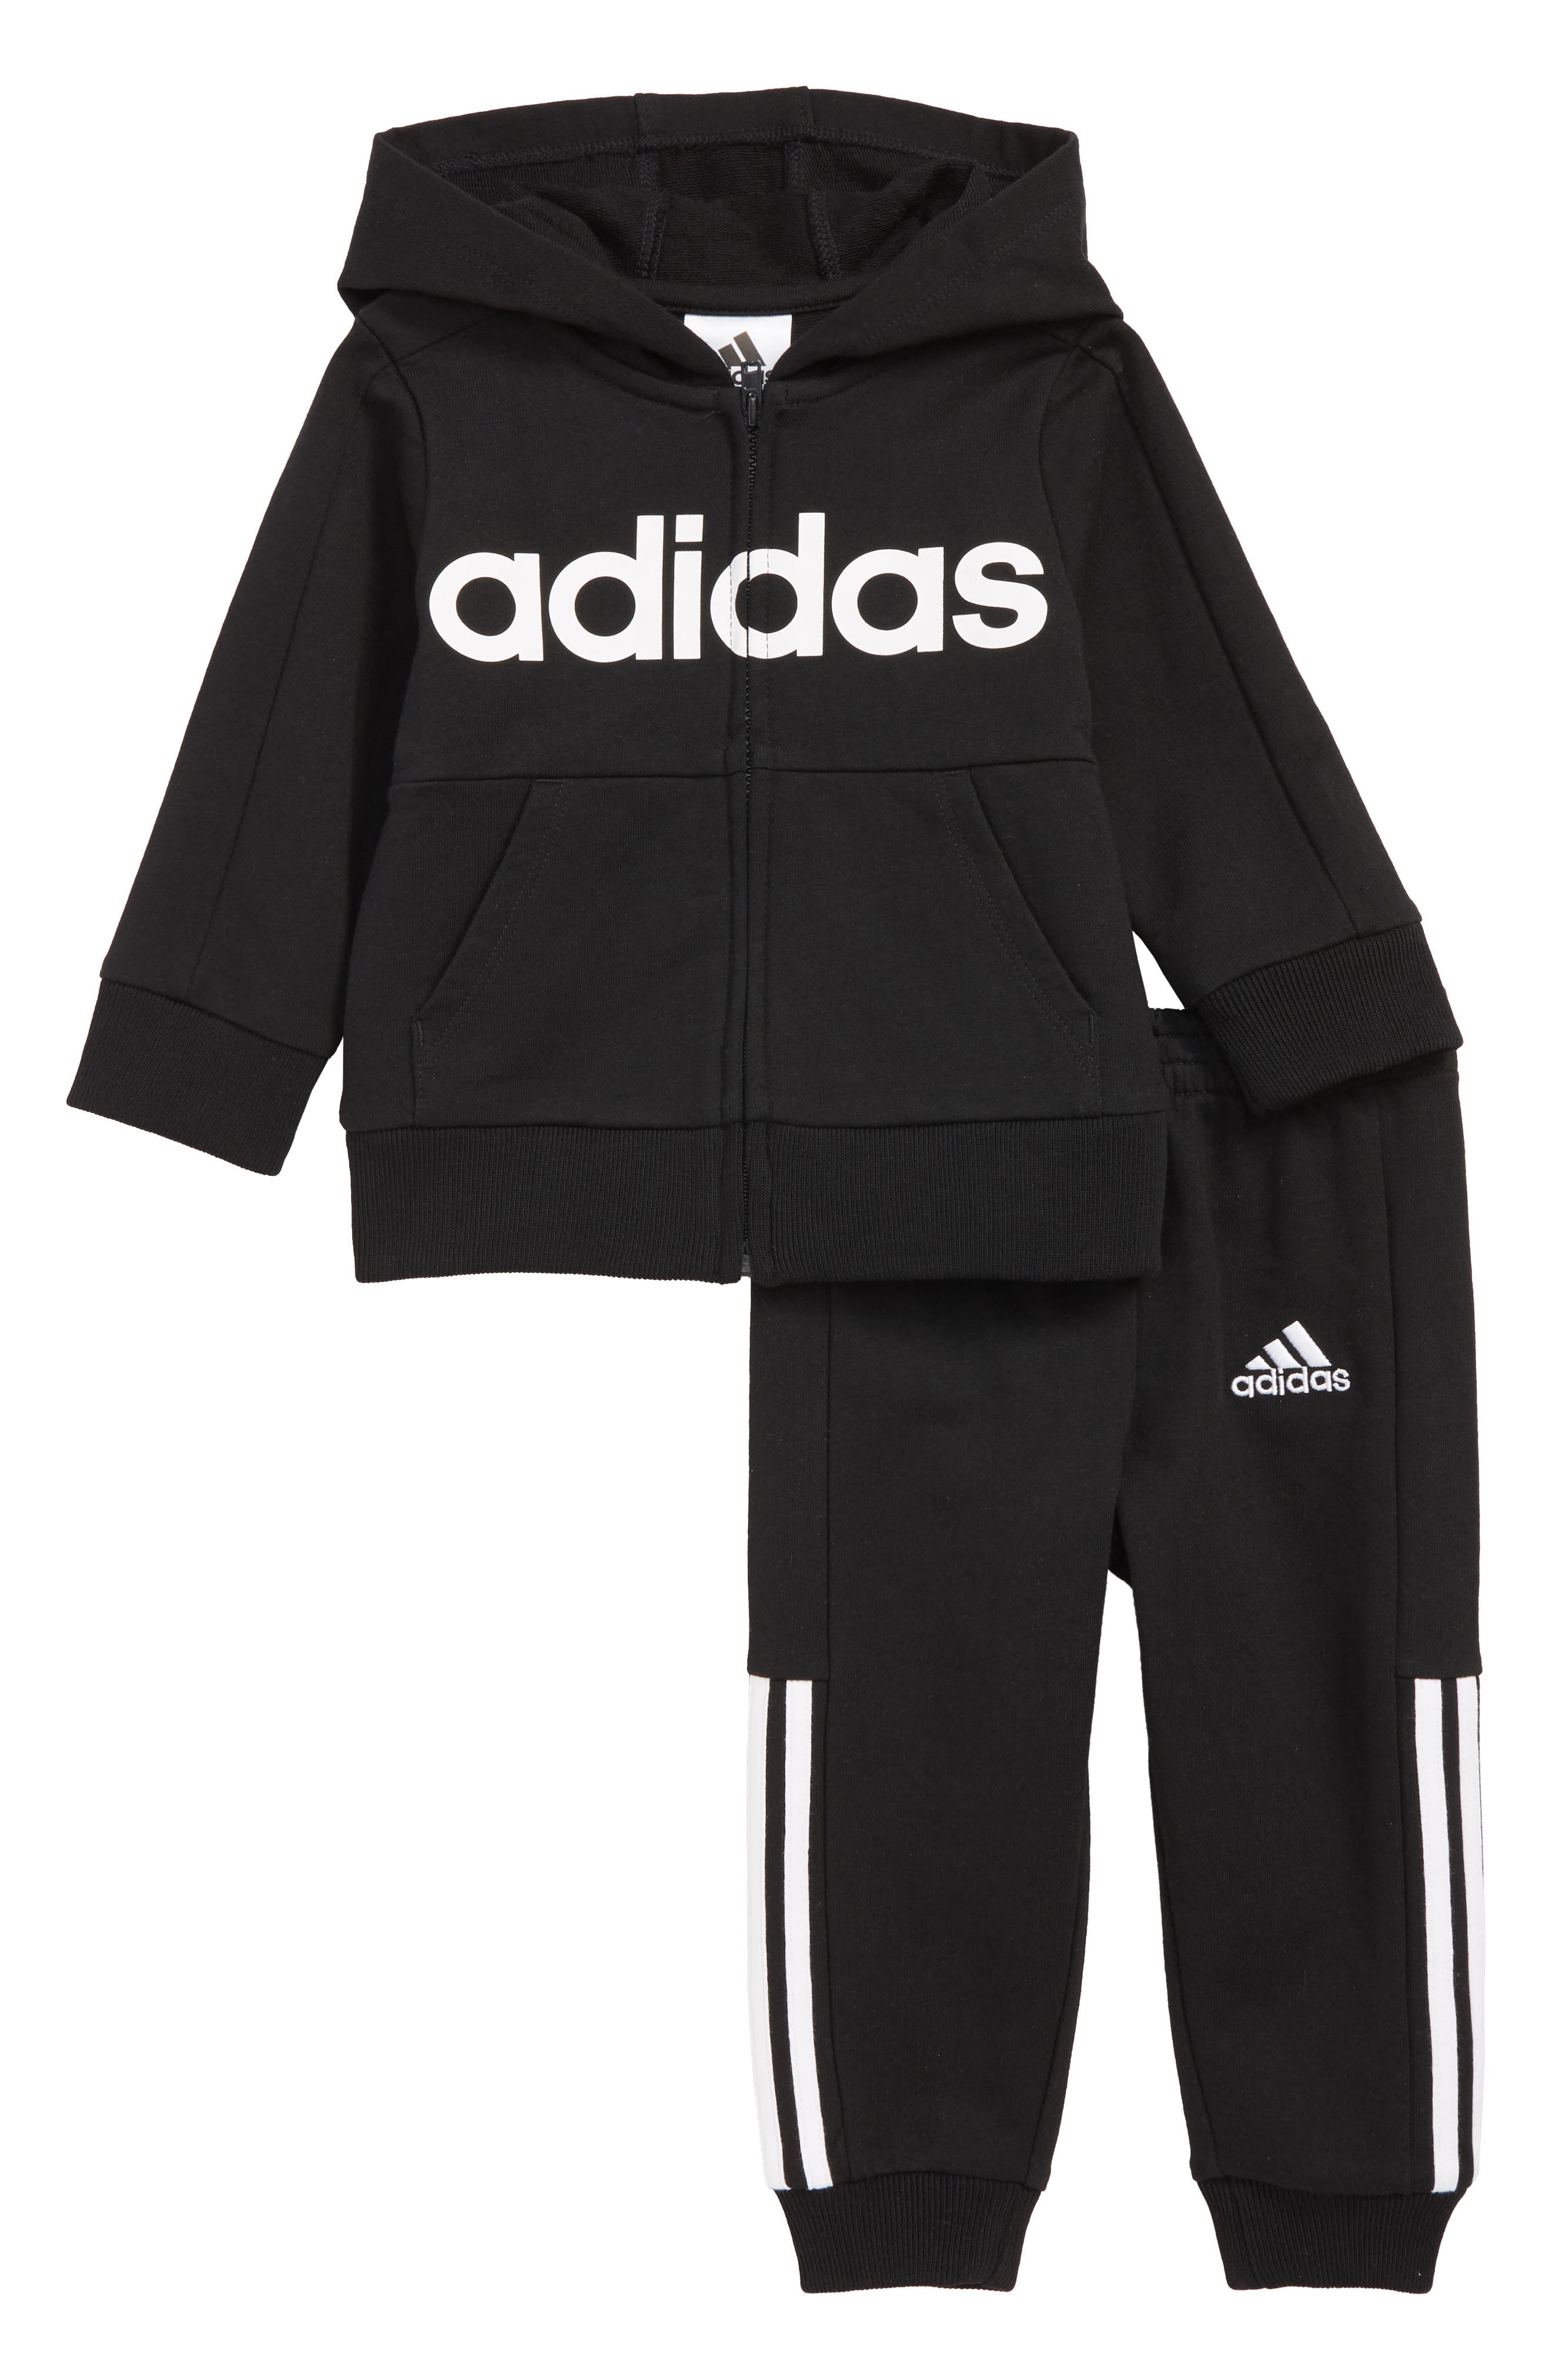 adidas baby hoodie set